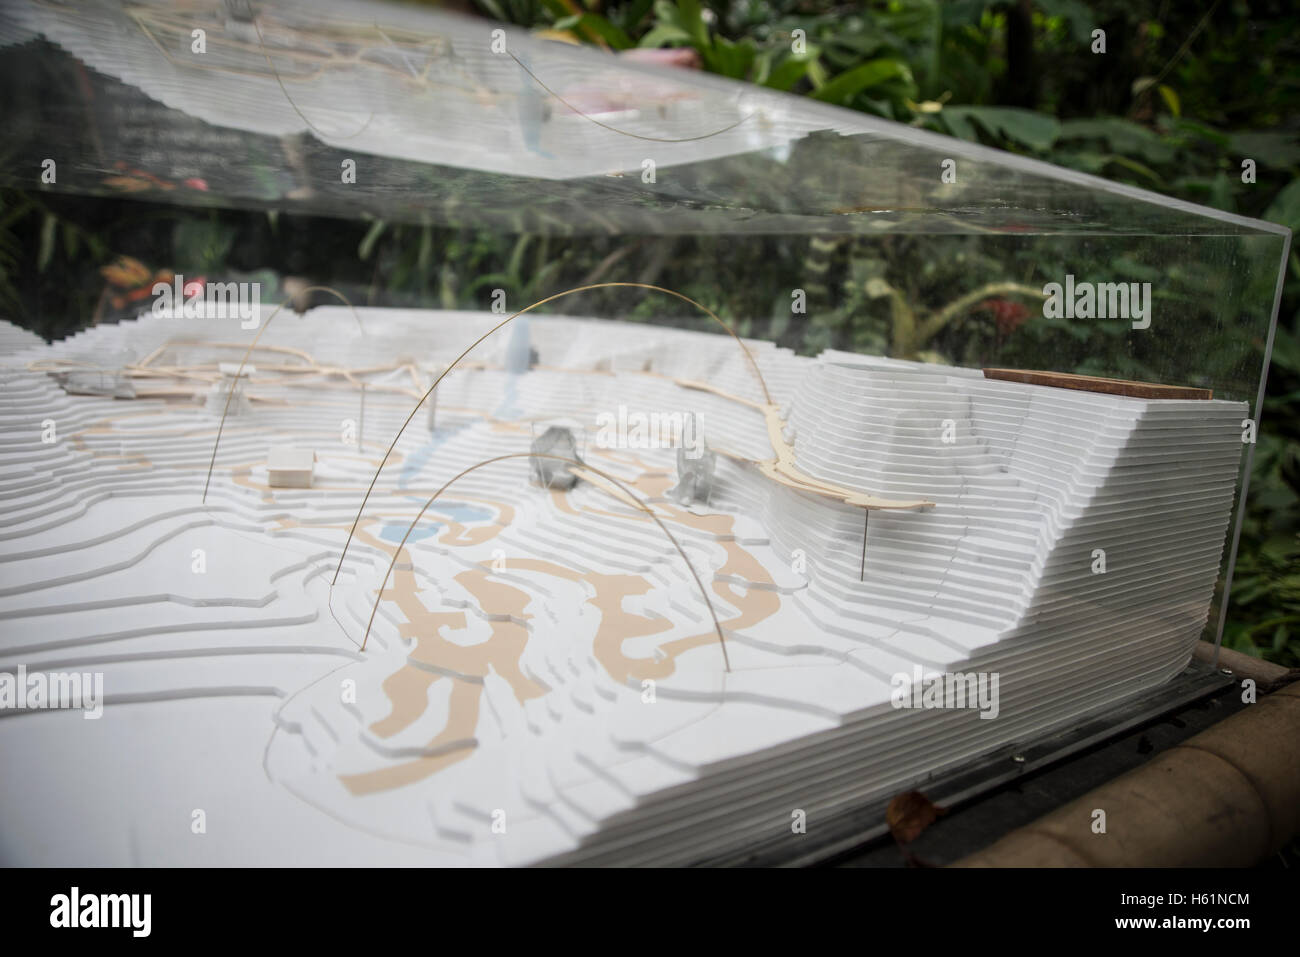 Un modello all'interno di Progetto Eden's Rainforest, che mostra la successiva fase di costruzione della passerella aerea. Foto Stock